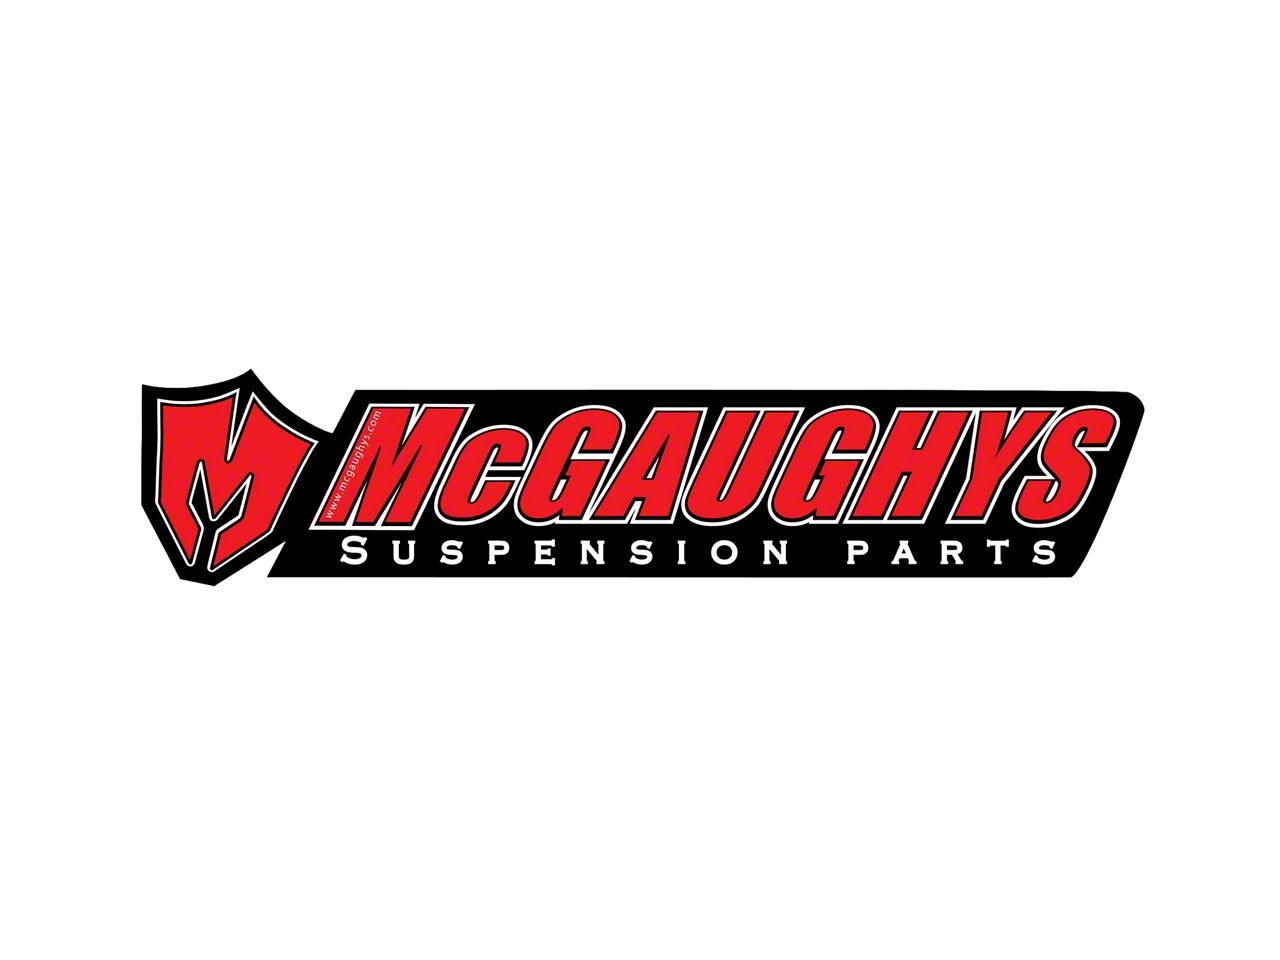 McGaughy's Suspension Parts